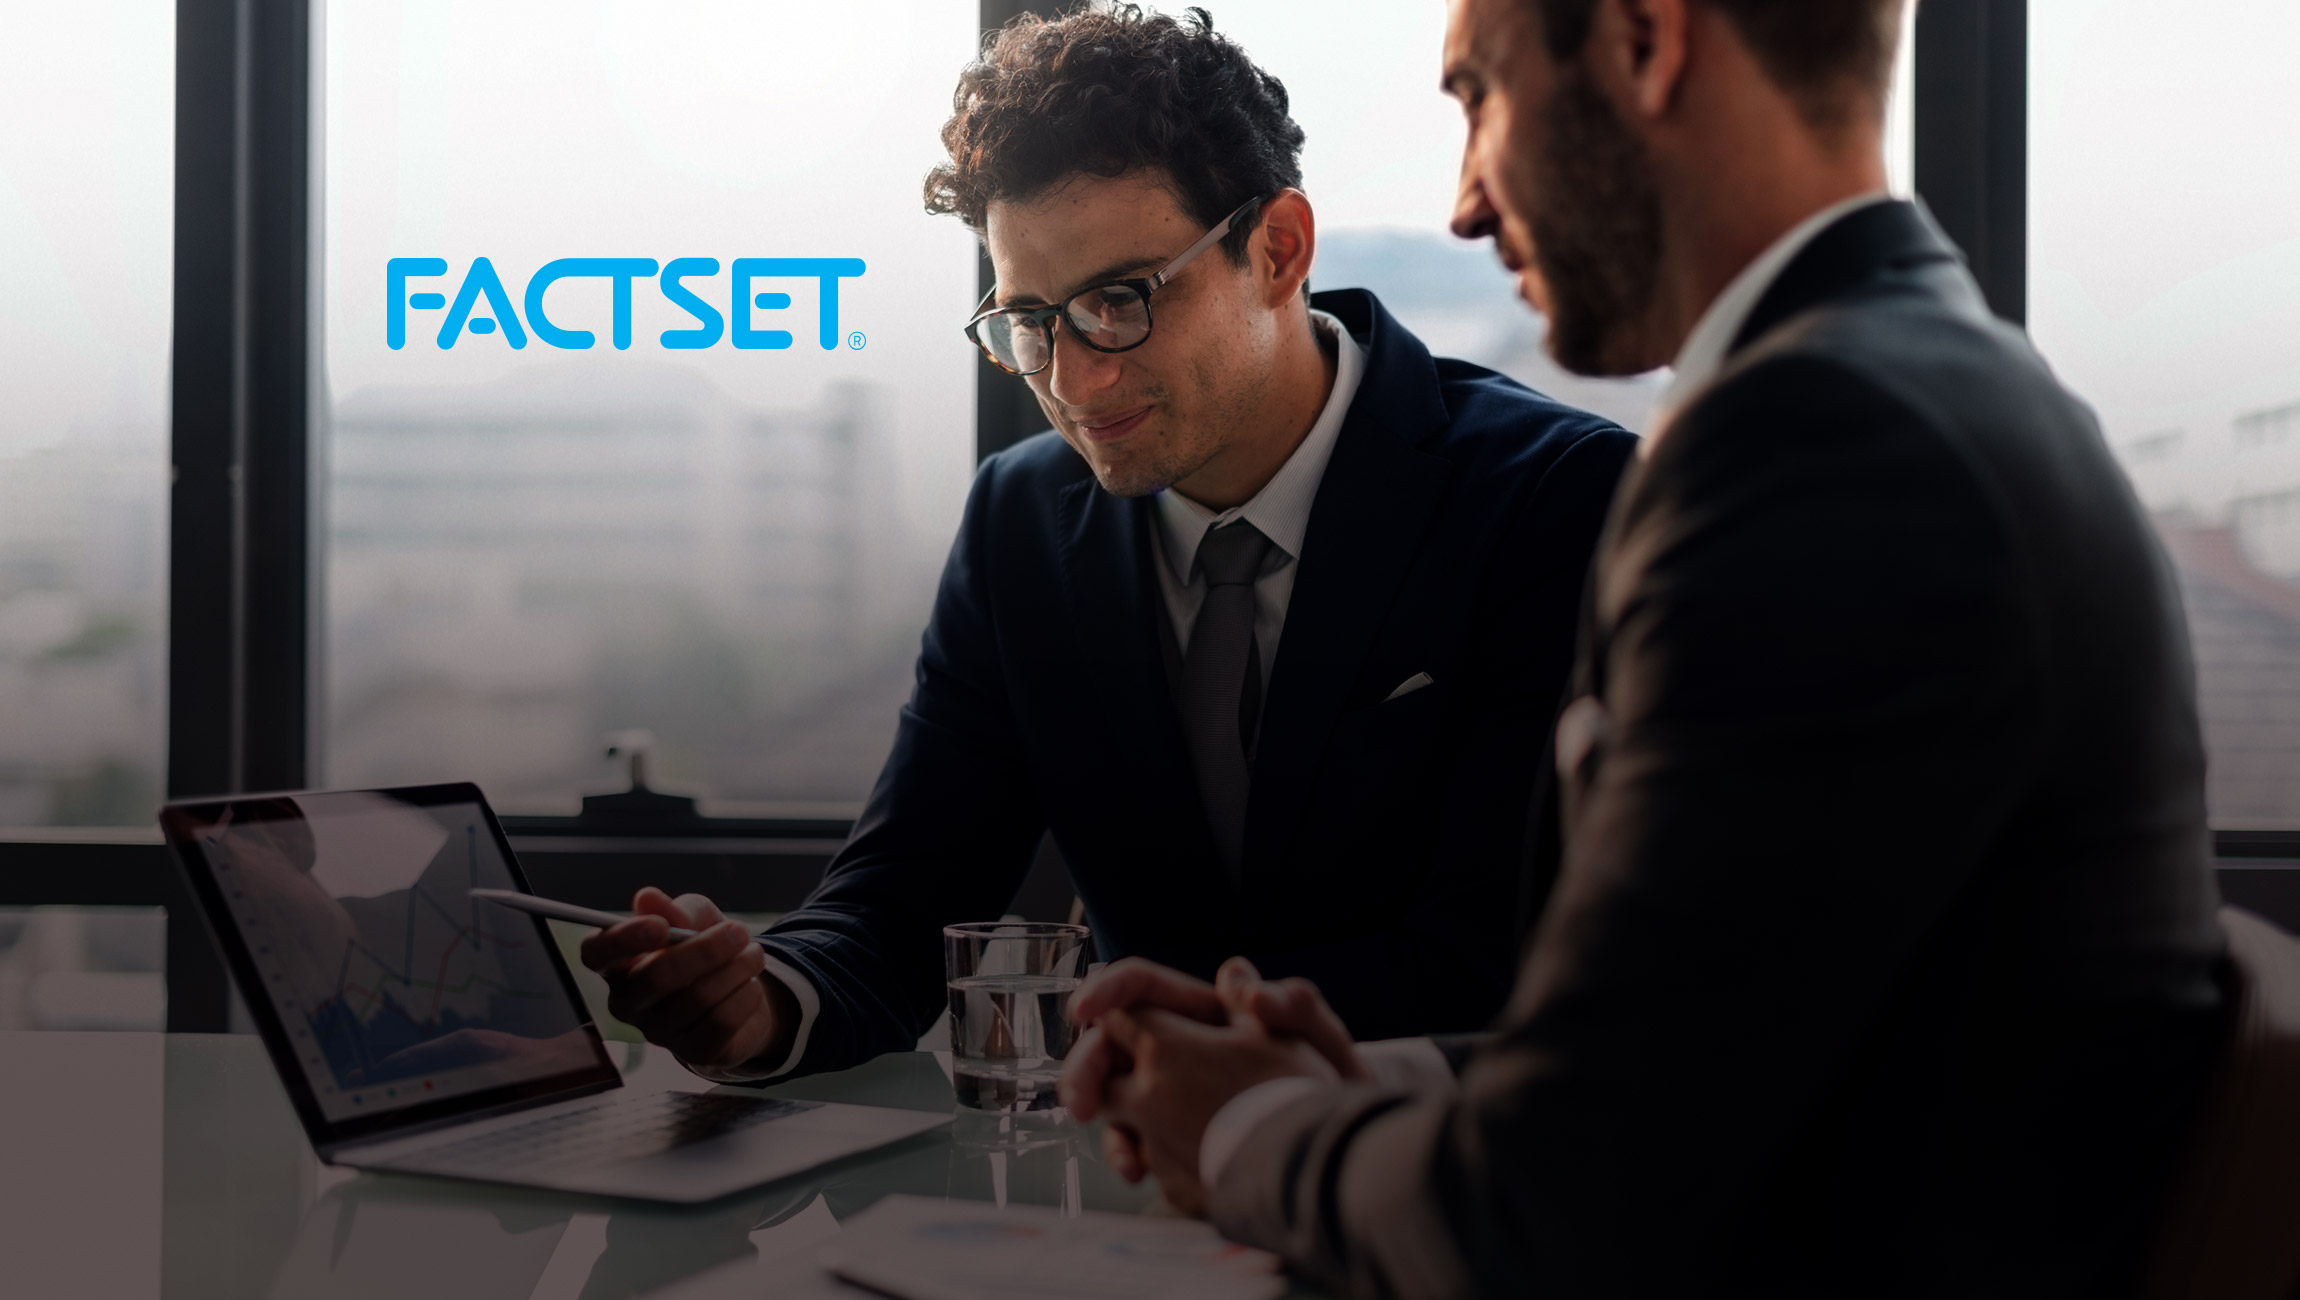 FactSet Announces FactSet for CRM on Salesforce AppExchange, the World's Leading Enterprise Cloud Marketplace